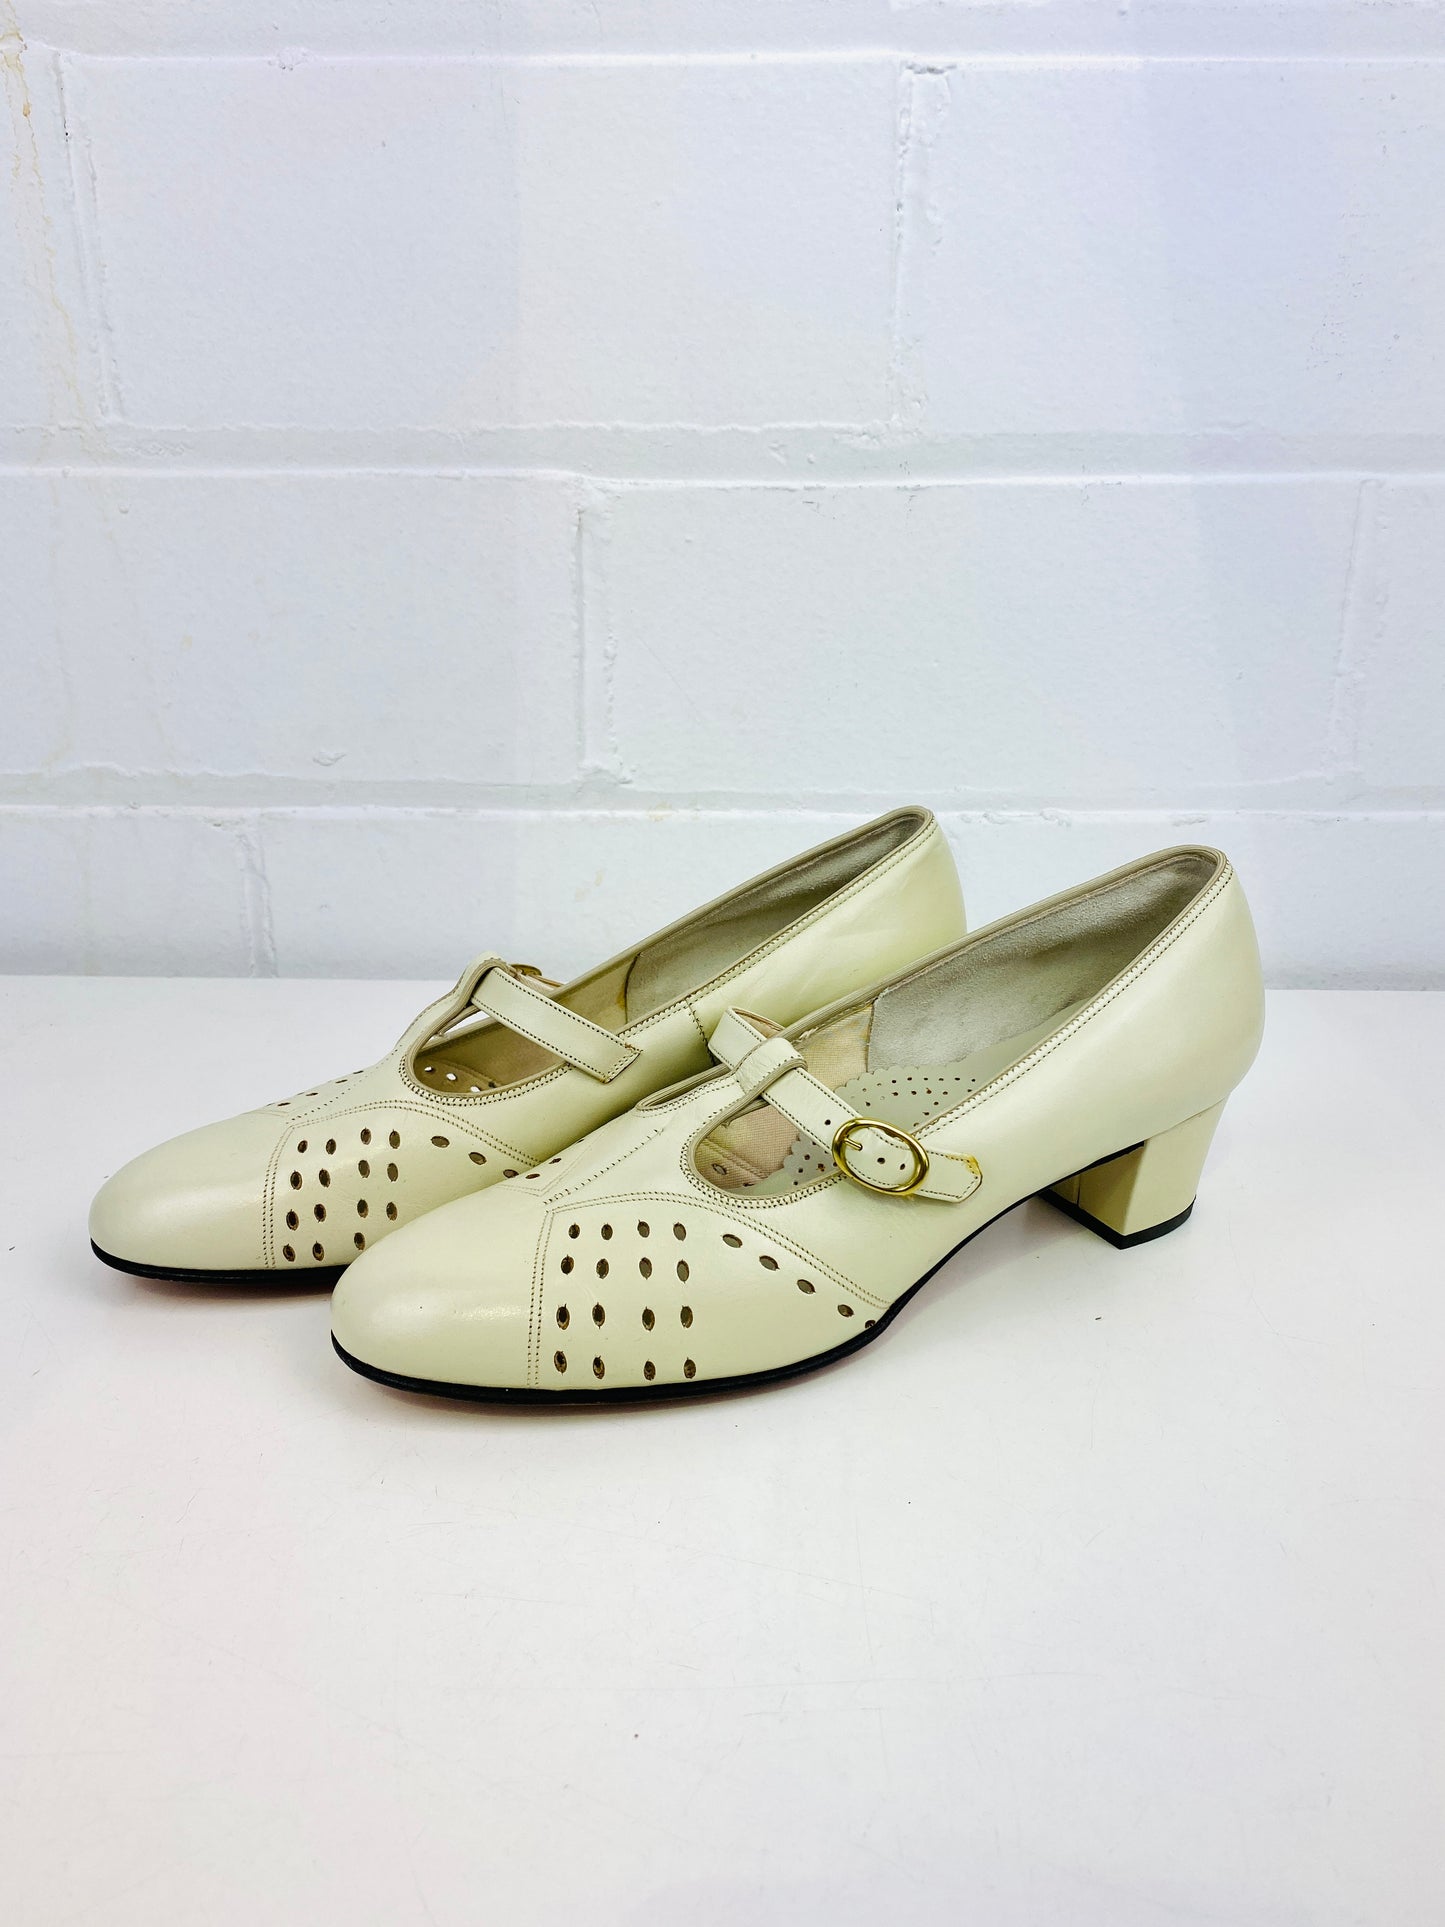 Vintage Deadstock Shoes, Women's 1980s Beige Leather Cuban Heel T-Strap Pumps, NOS, 7869